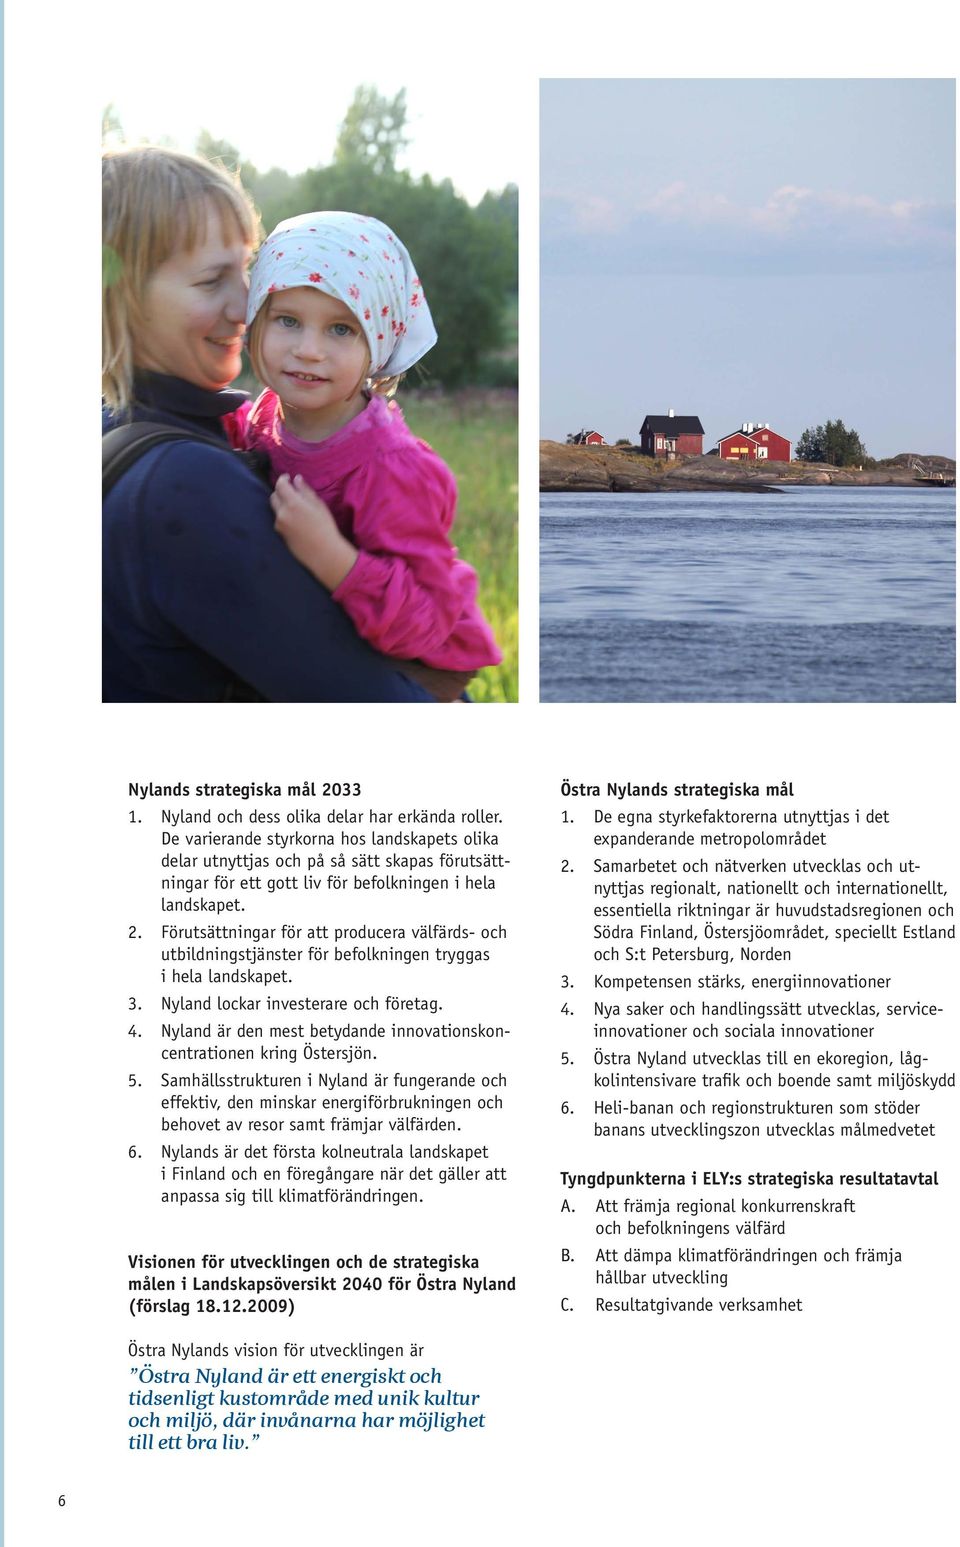 Förutsättningar för att producera välfärds- och utbildningstjänster för befolkningen tryggas i hela landskapet. 3. Nyland lockar investerare och företag. 4.